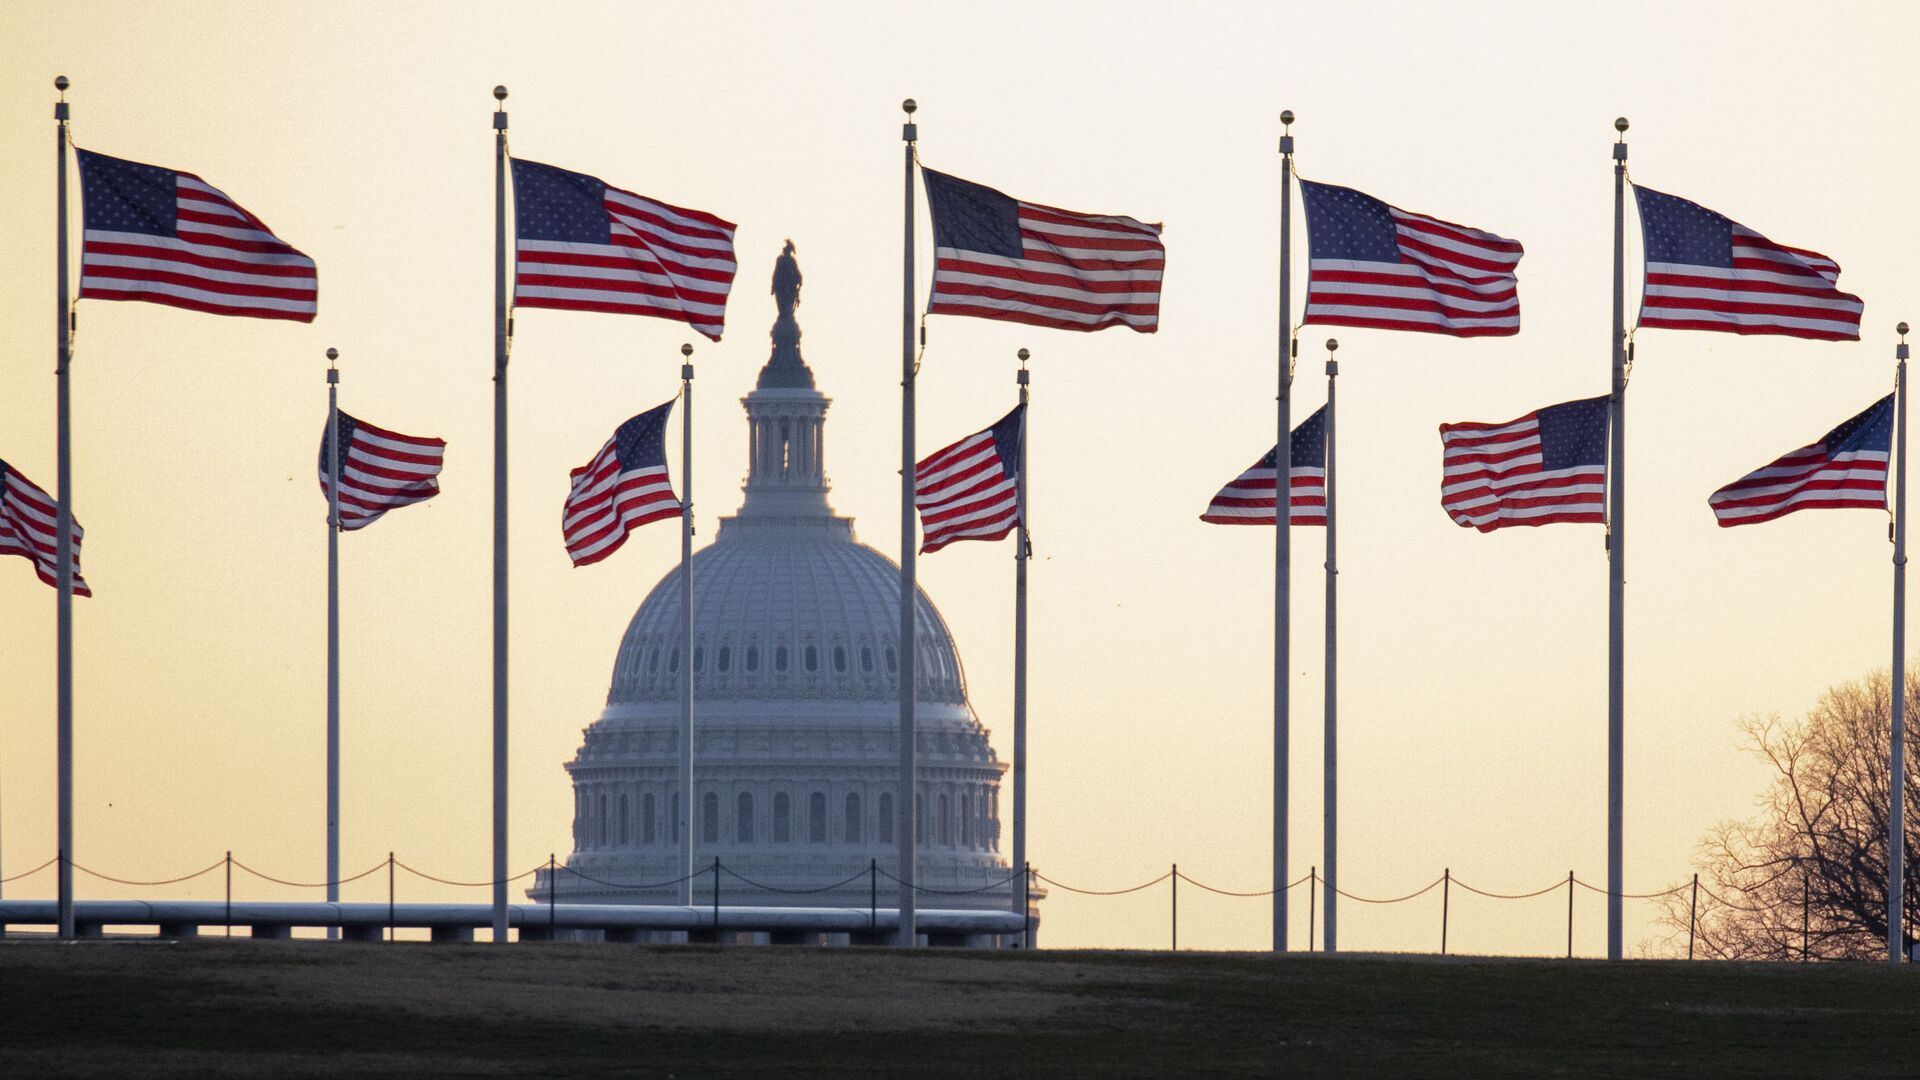 Американские флаги на фоне Капитолия в Вашингтоне, США - Sputnik Србија, 1920, 06.11.2021